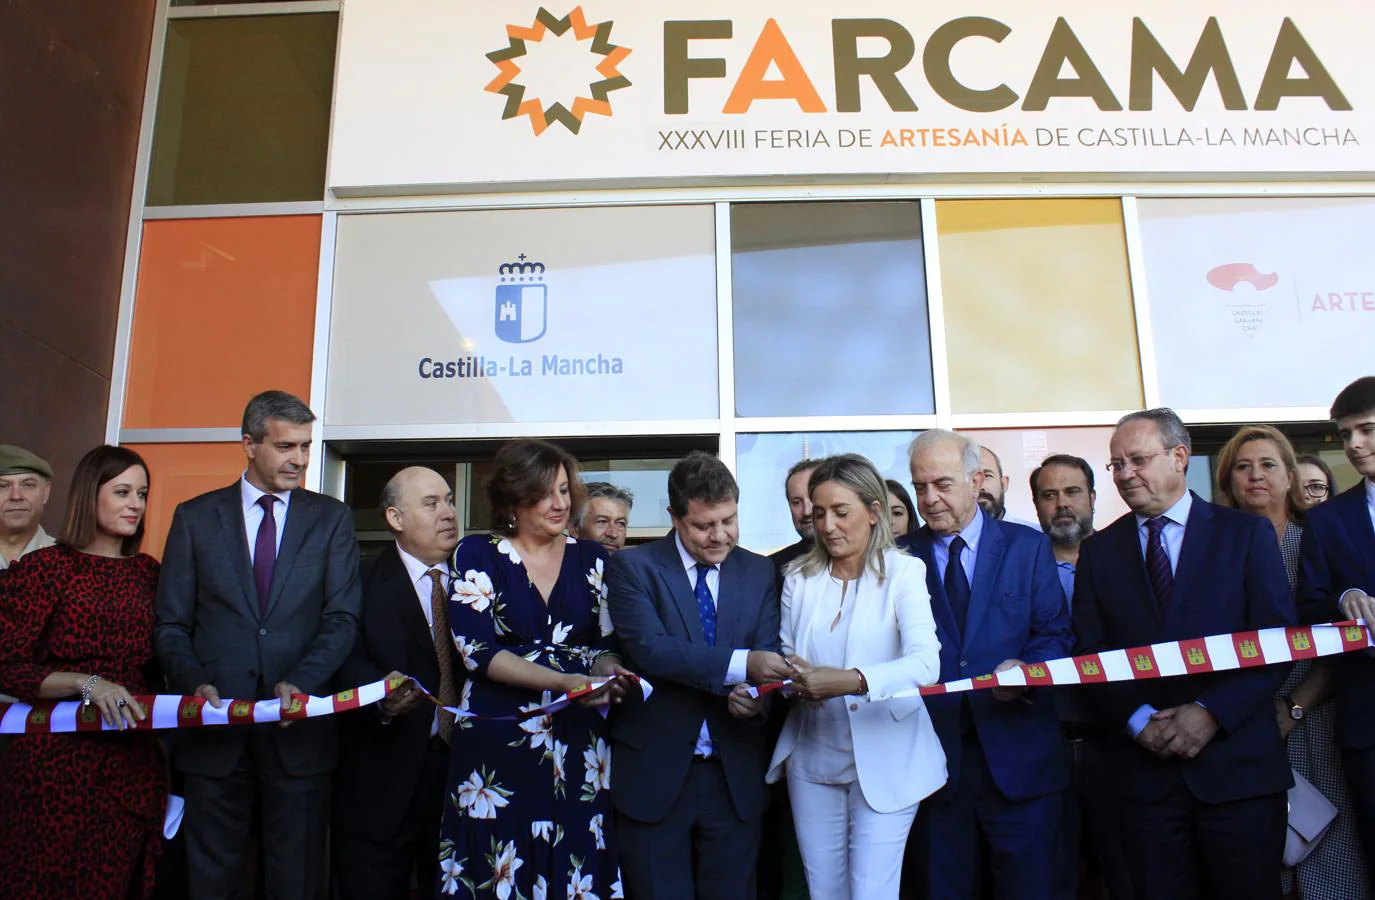 Arranca una nueva edición de Farcama en Toledo